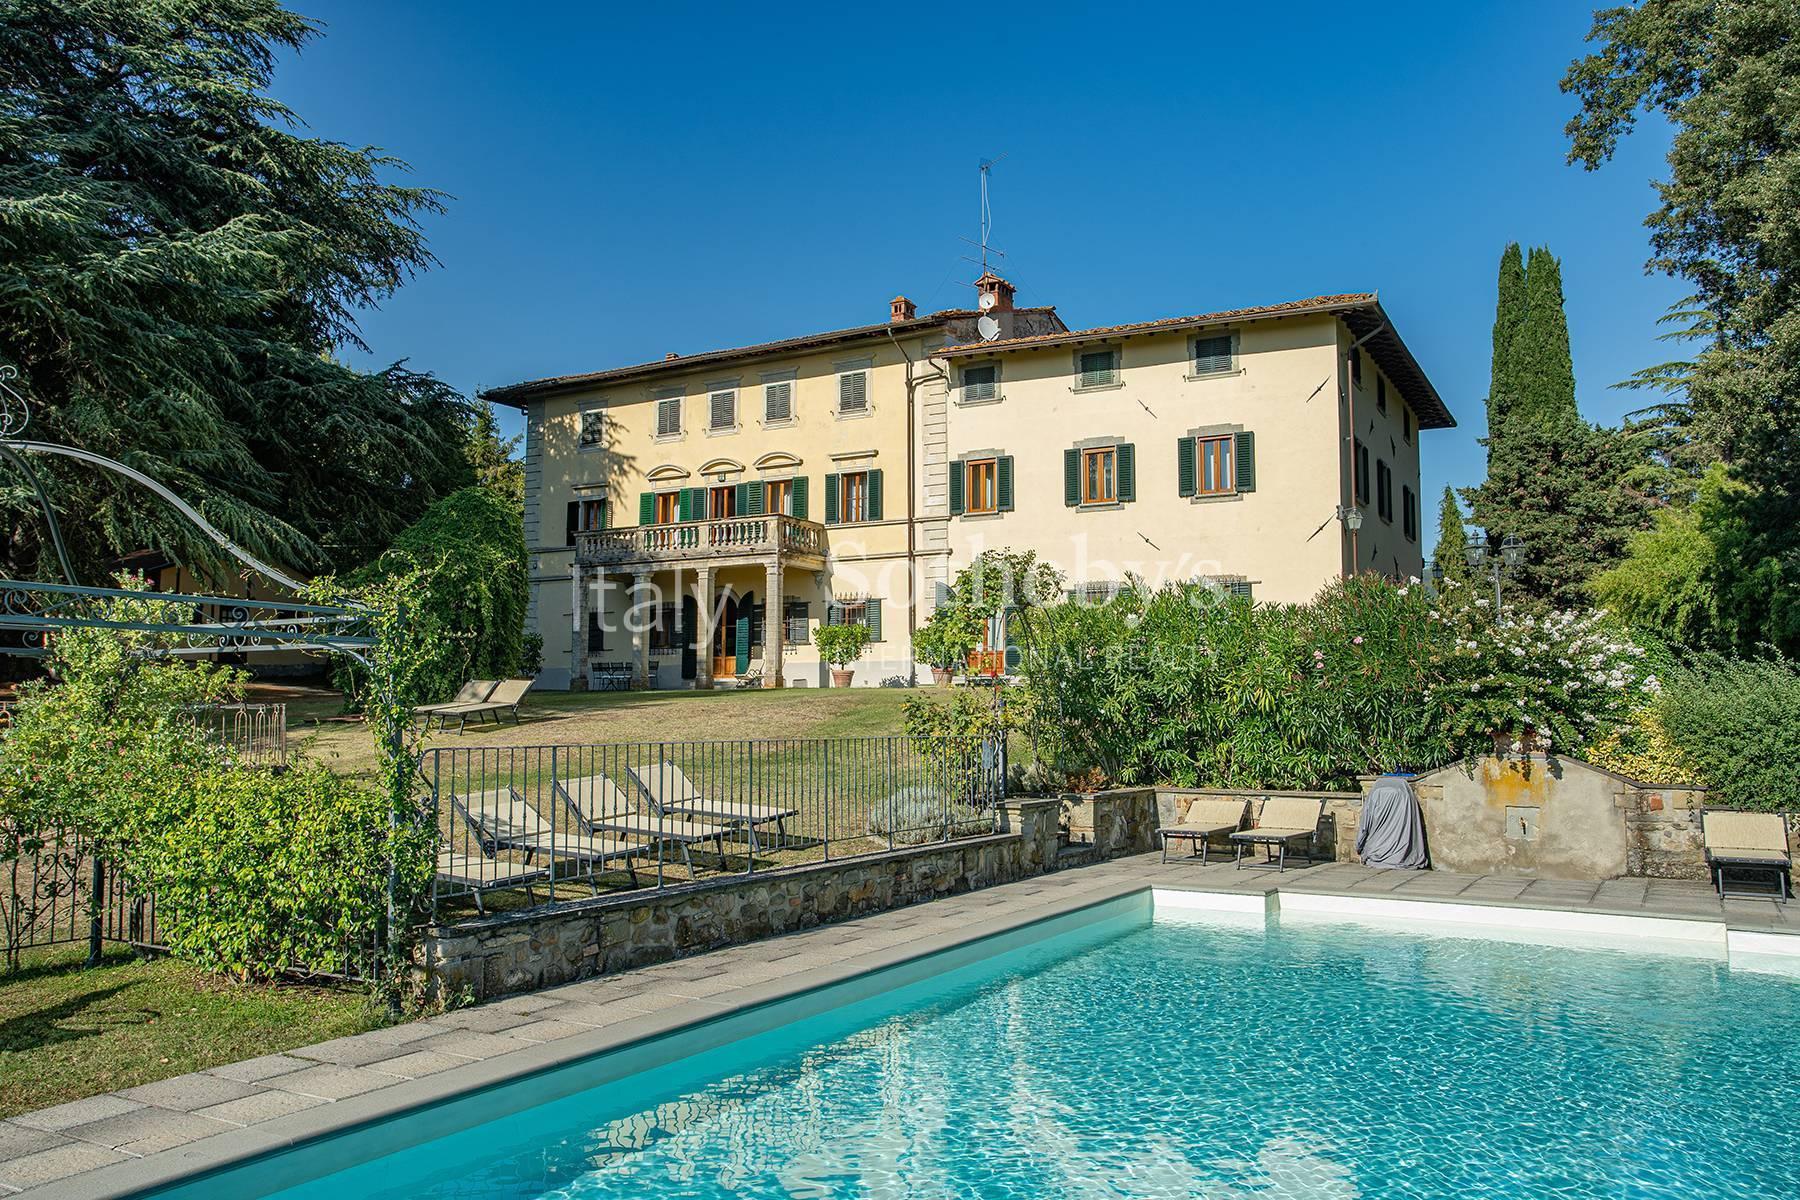 Historic villa in the Mugello valley - 3